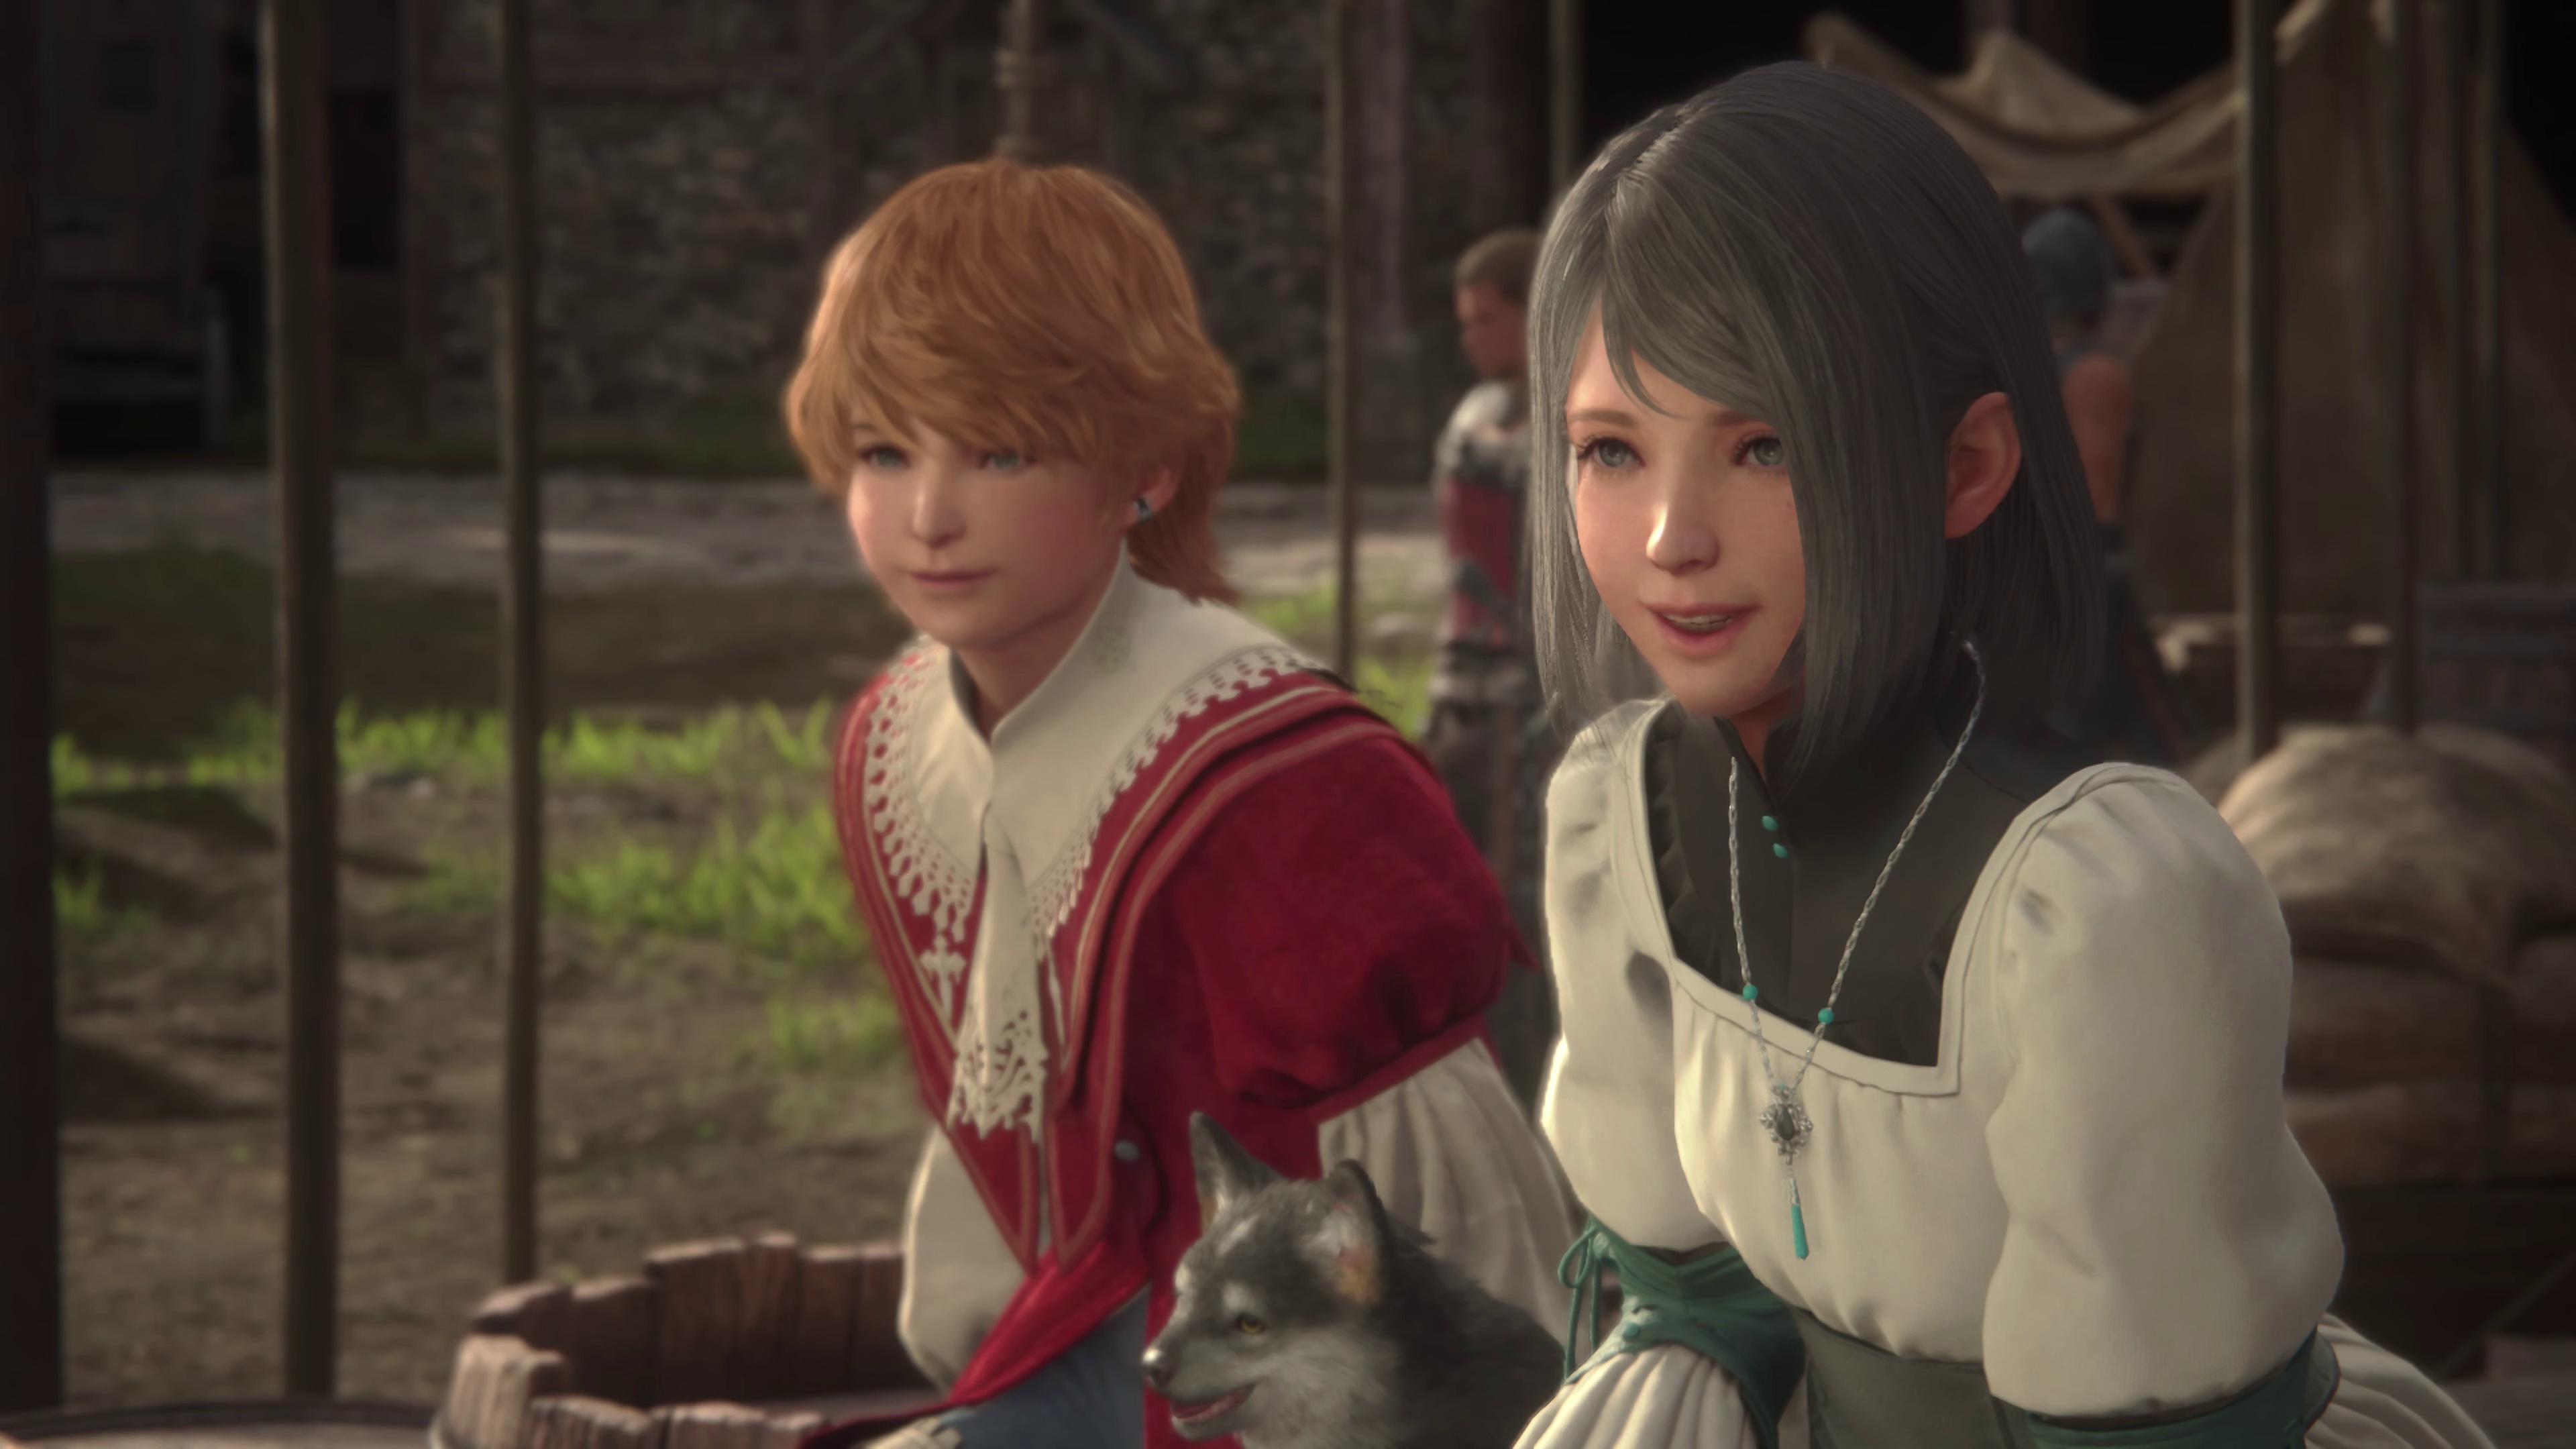 (Final Fantasy 16 transcurre en varios husos horarios: aquí Joshua y Jill son aún niños, más tarde son casi adultos).